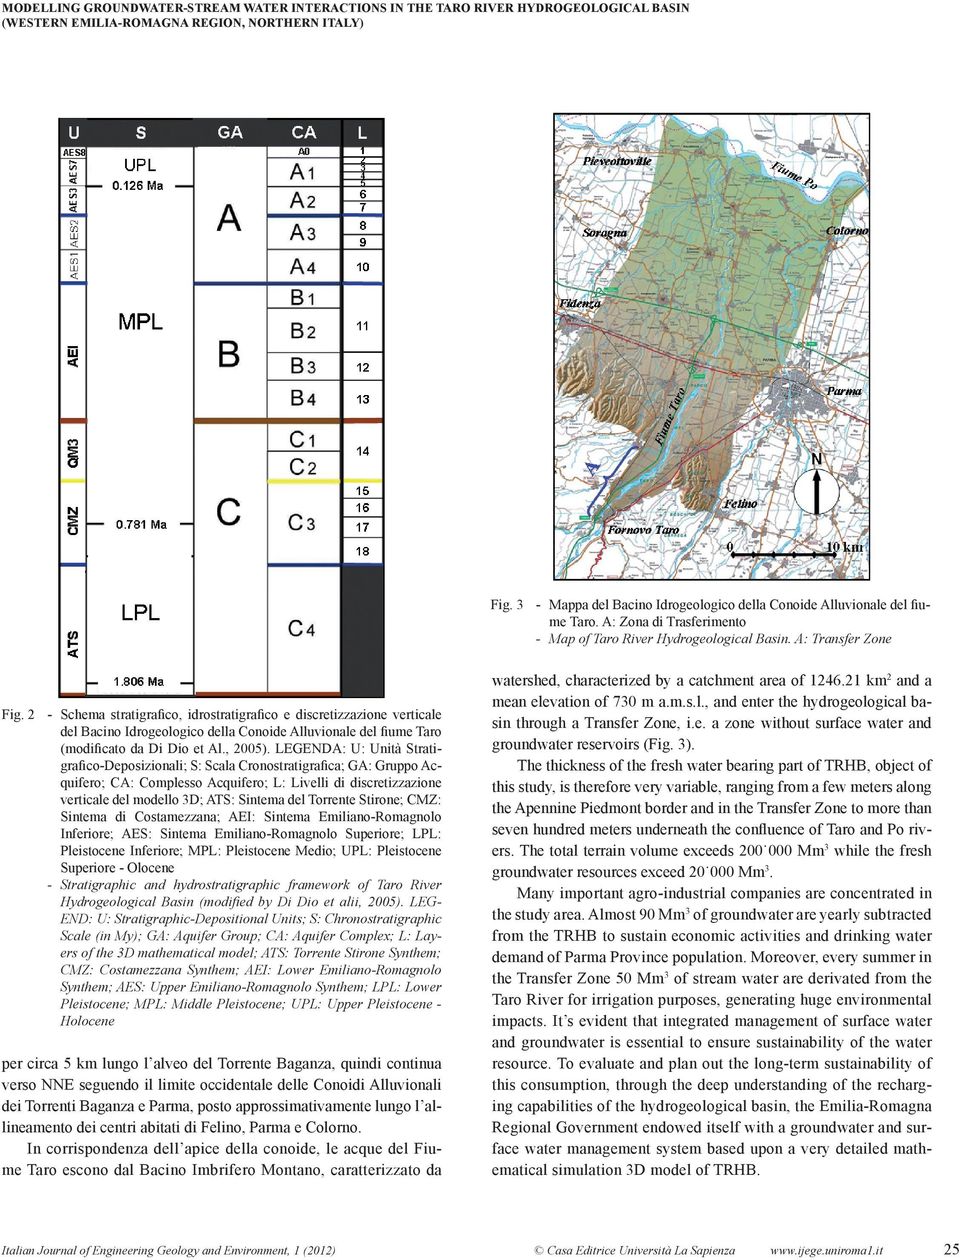 2 - Schema stratigrafico, idrostratigrafico e discretizzazione verticale del Bacino Idrogeologico della Conoide Alluvionale del fiume Taro (modificato da Di Dio et Al., 2005).